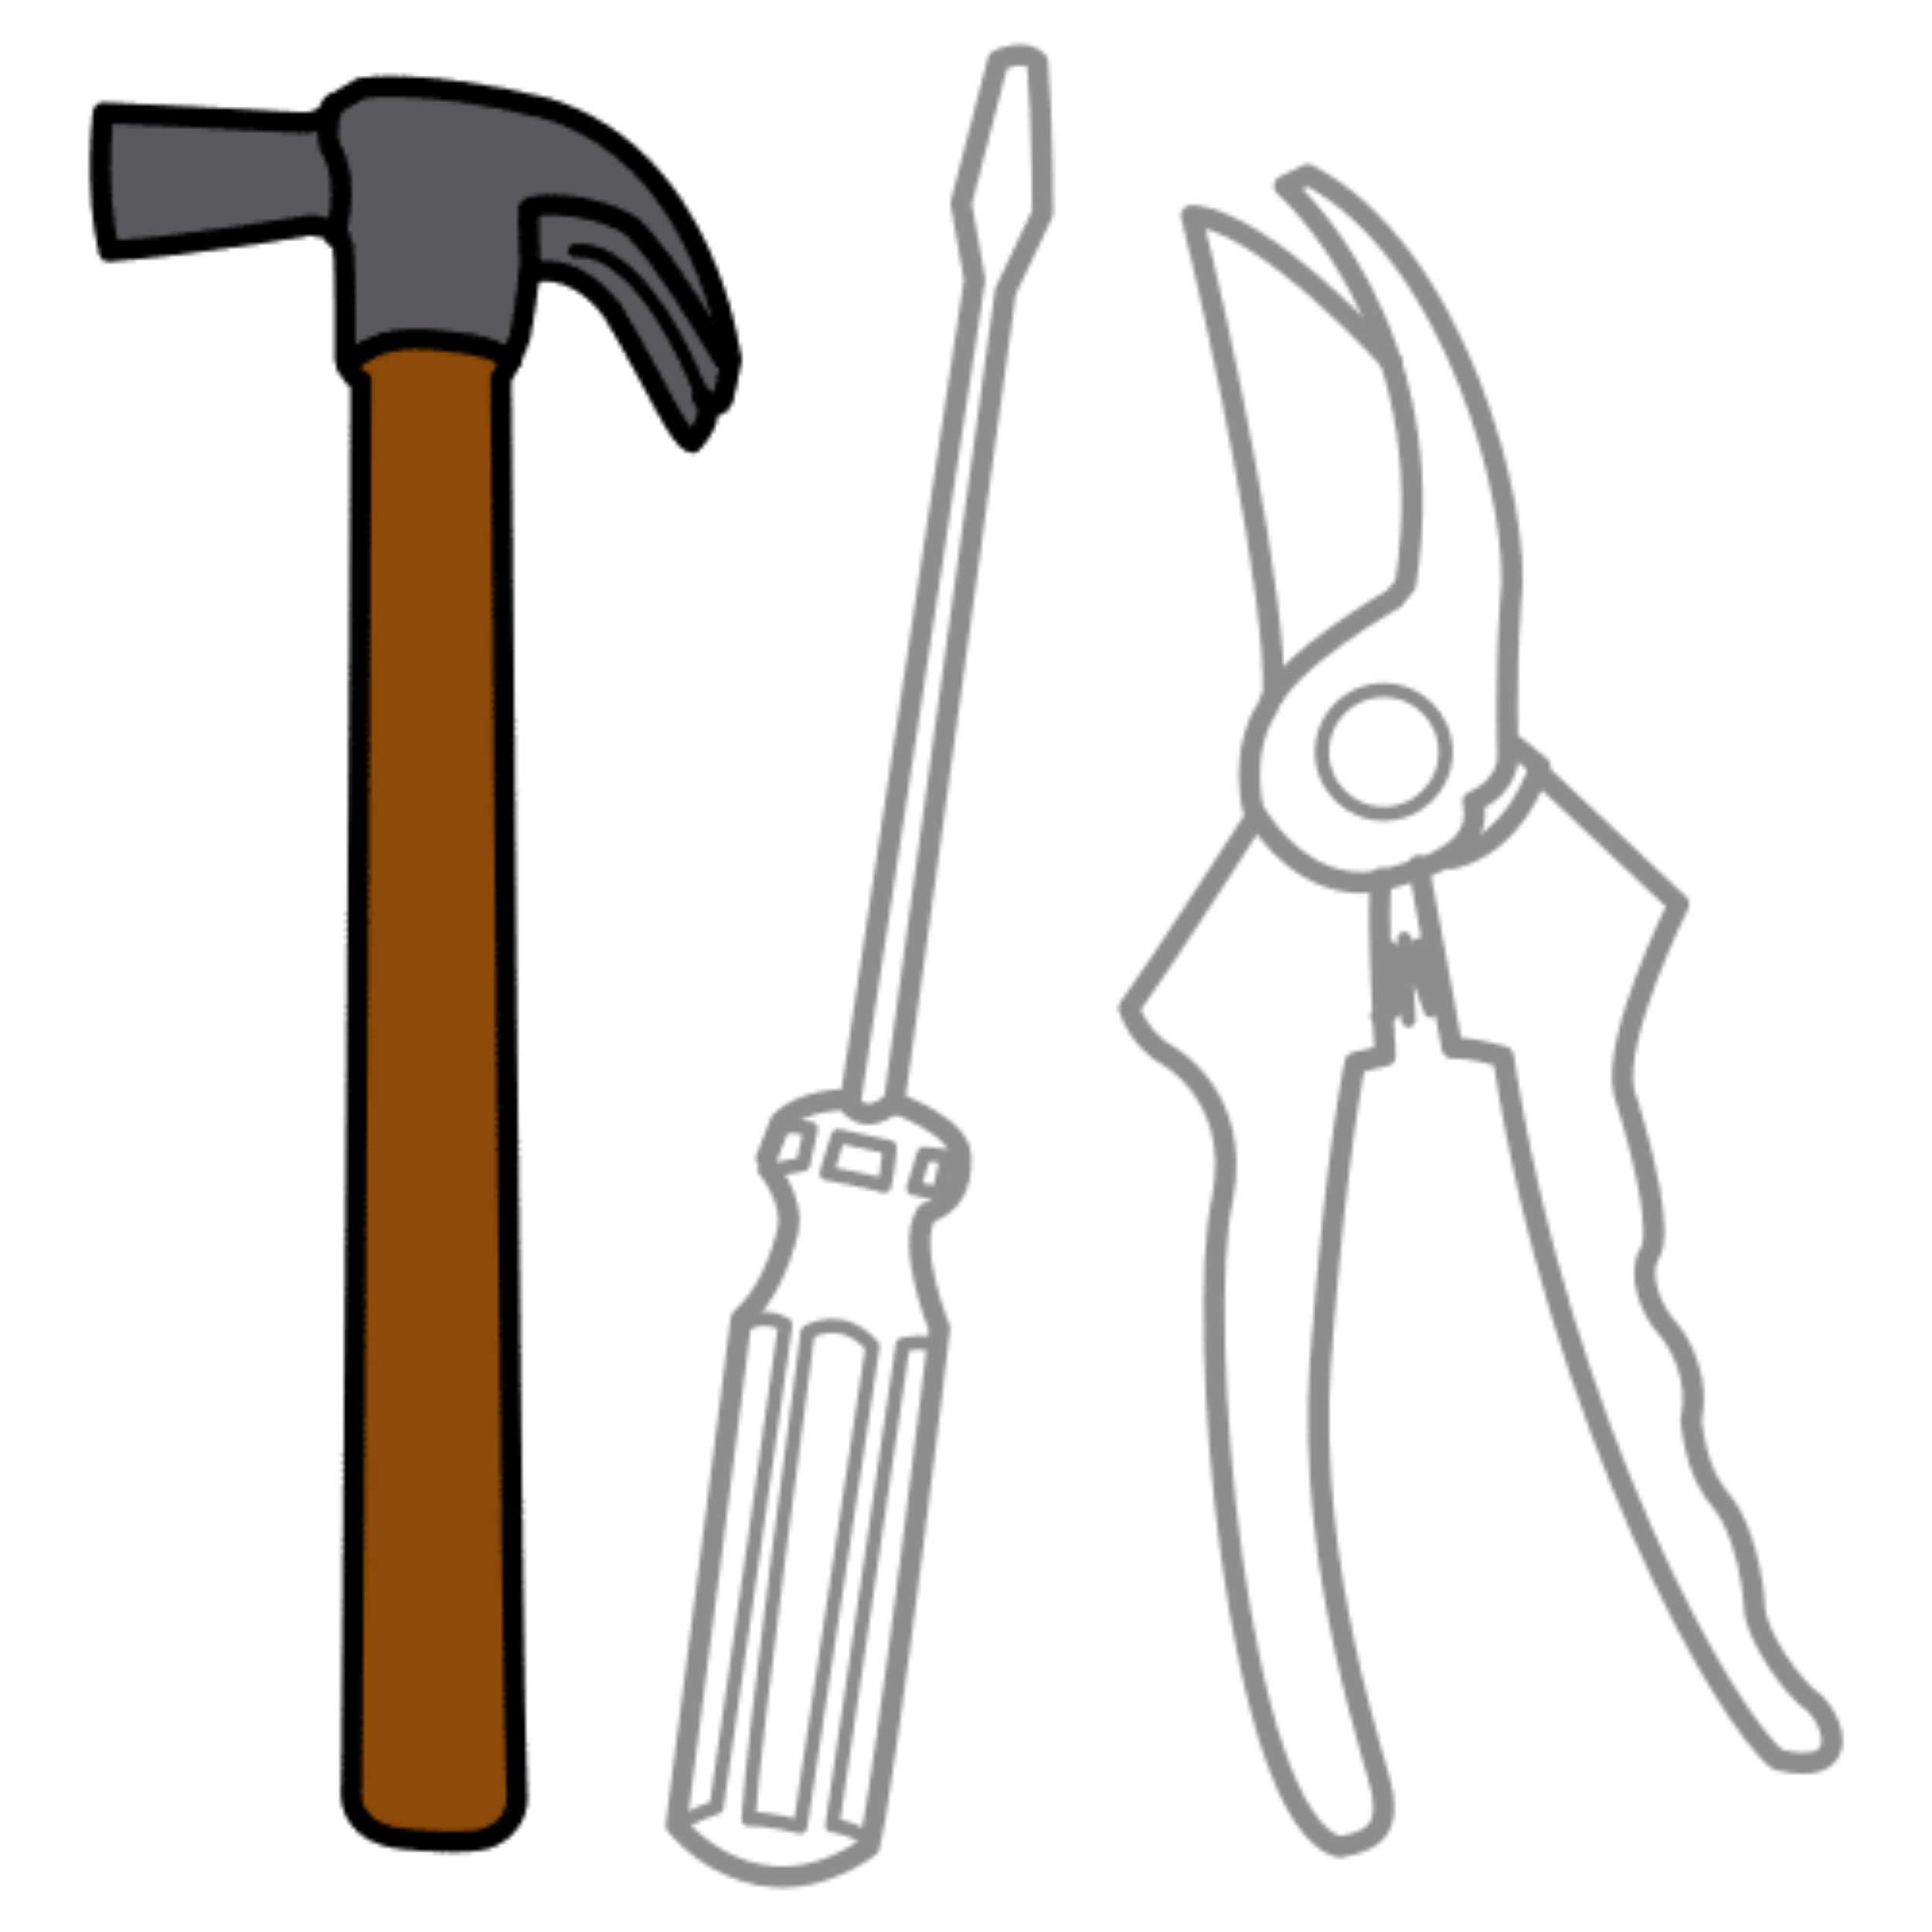 La imagen muestra tres herramientas (un martillo, un destornillador y unos alicates).